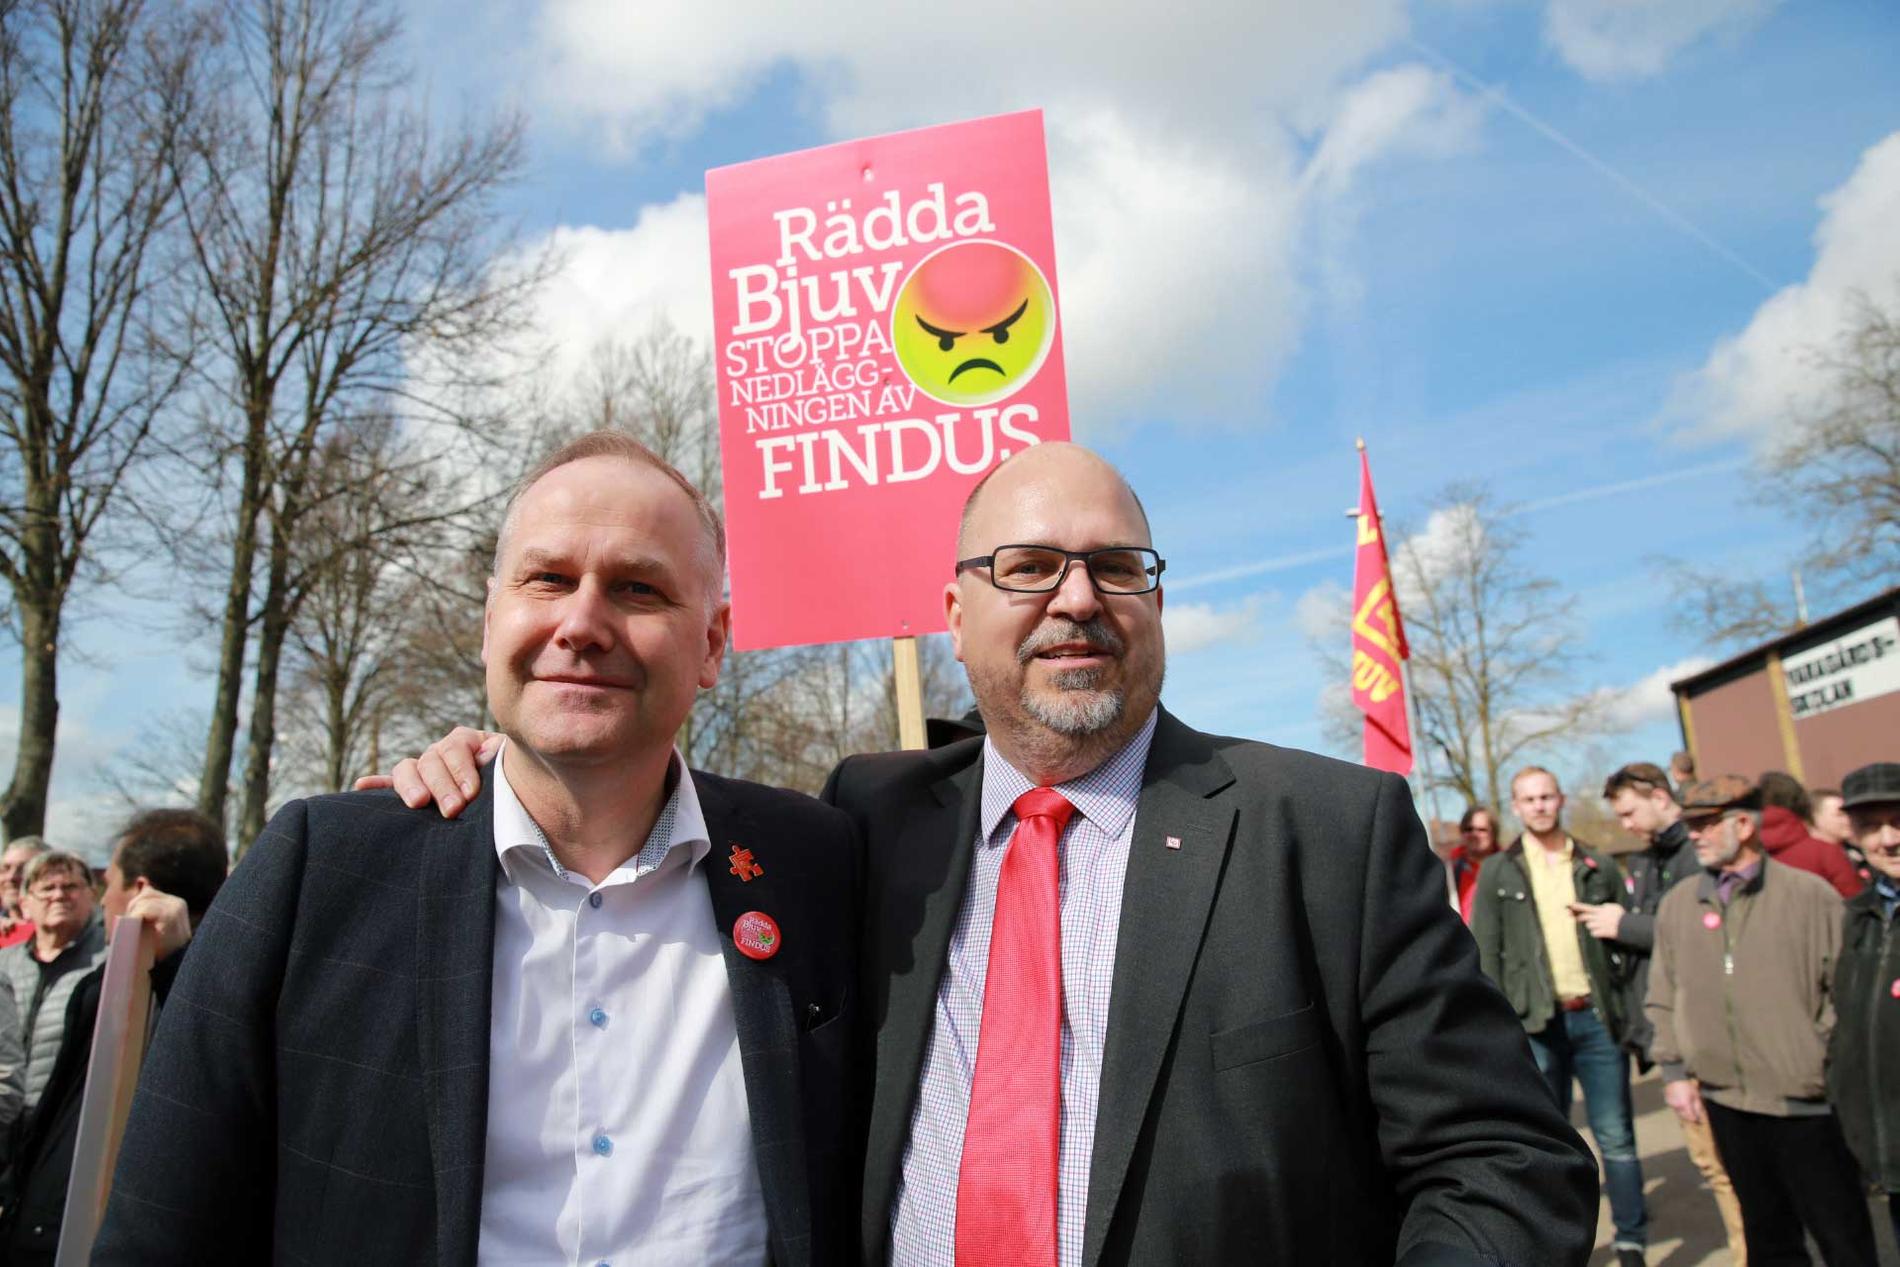 Vänsterpartiets partiledare Jonas Sjöstedt och LO:s ordförande Karl-Petter Thorwaldsson på plats i Bjuv. ”Det här är en aggressiv, fientlig nedläggning. Det handlar om att trissa upp sin egen börskurs och bli av med en konkurrent”, säger Sjöstedt.